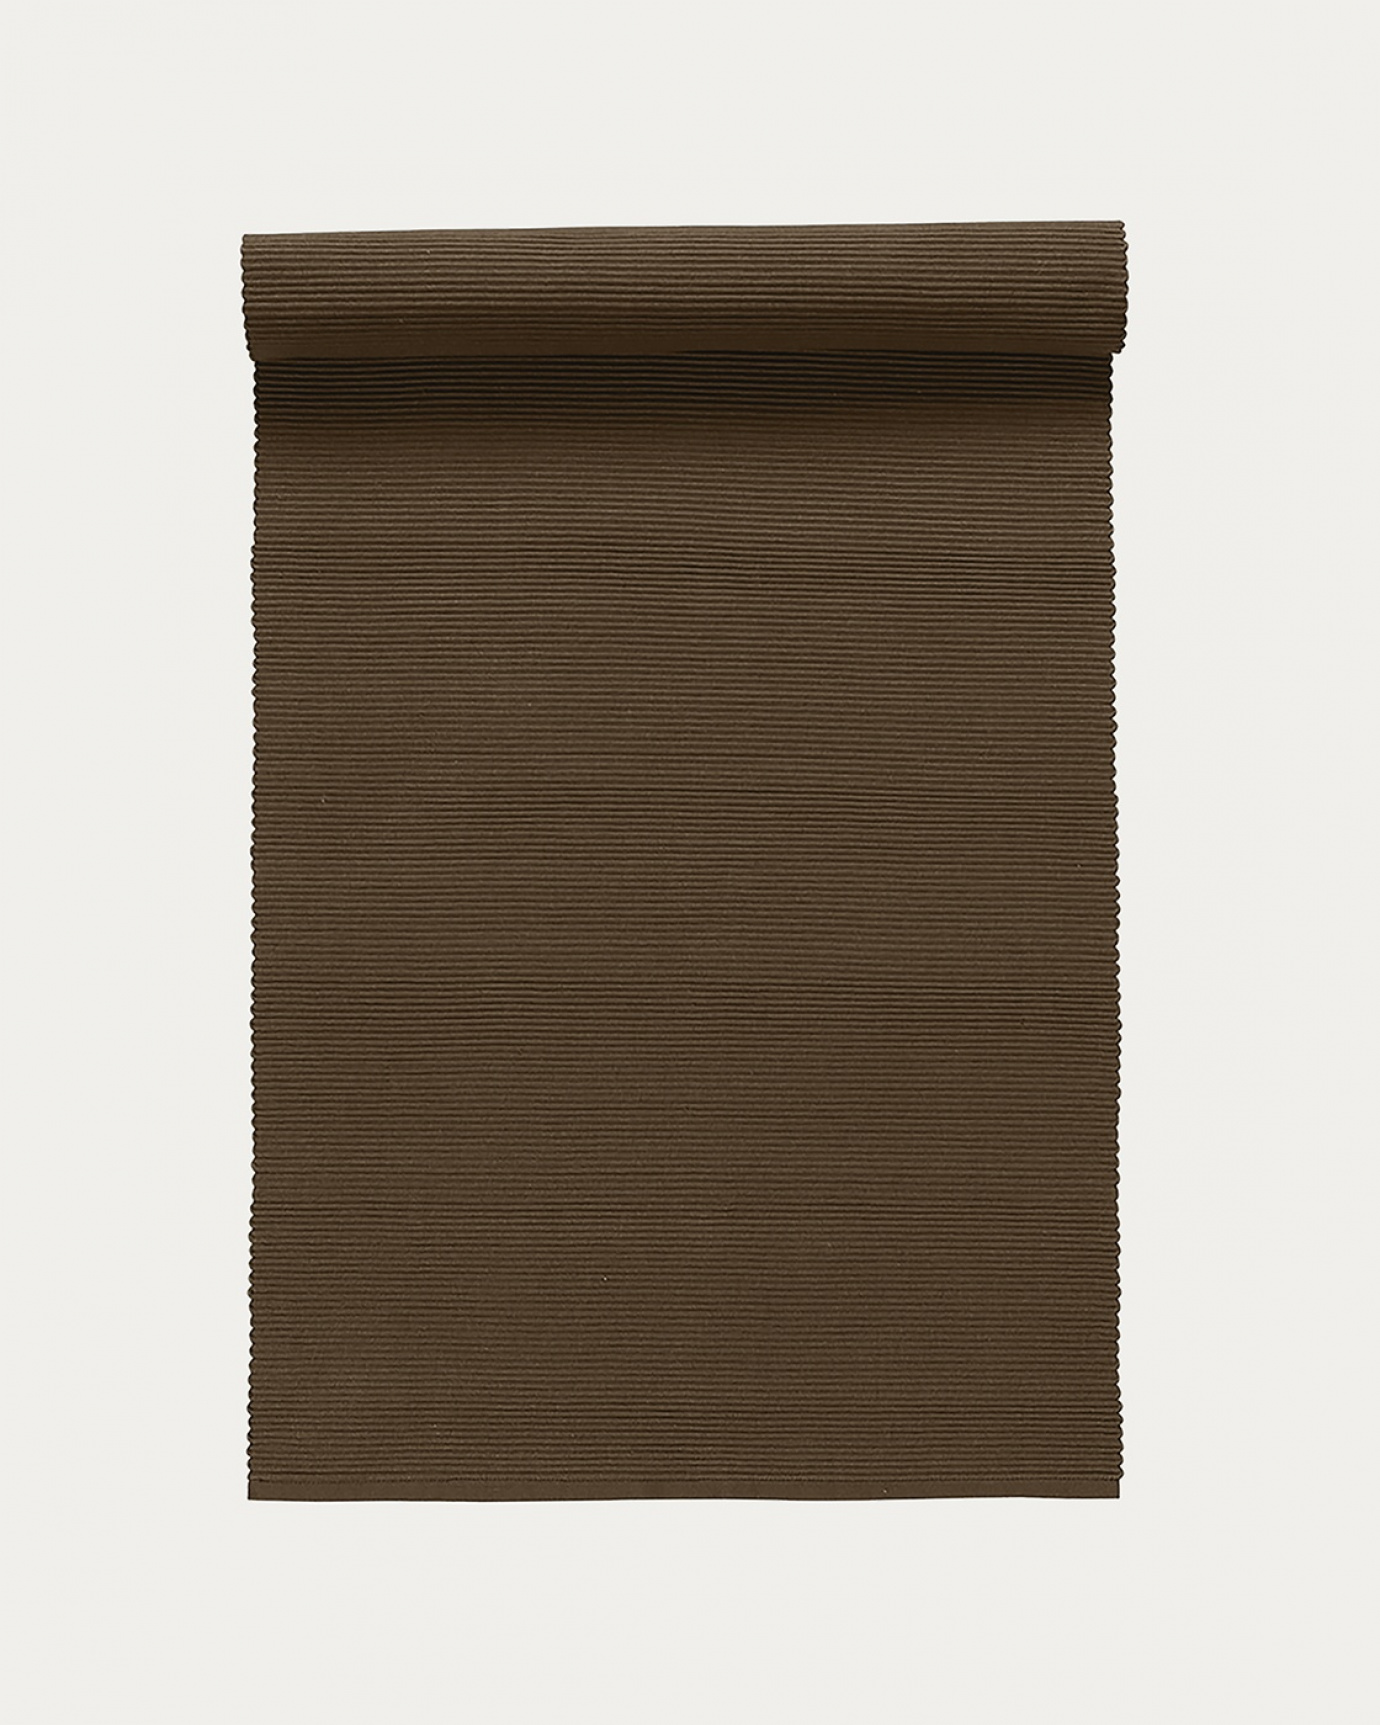 Produktbild björnbrun UNI löpare av mjuk bomull i ribbad kvalité från LINUM DESIGN. Storlek 45x150 cm.